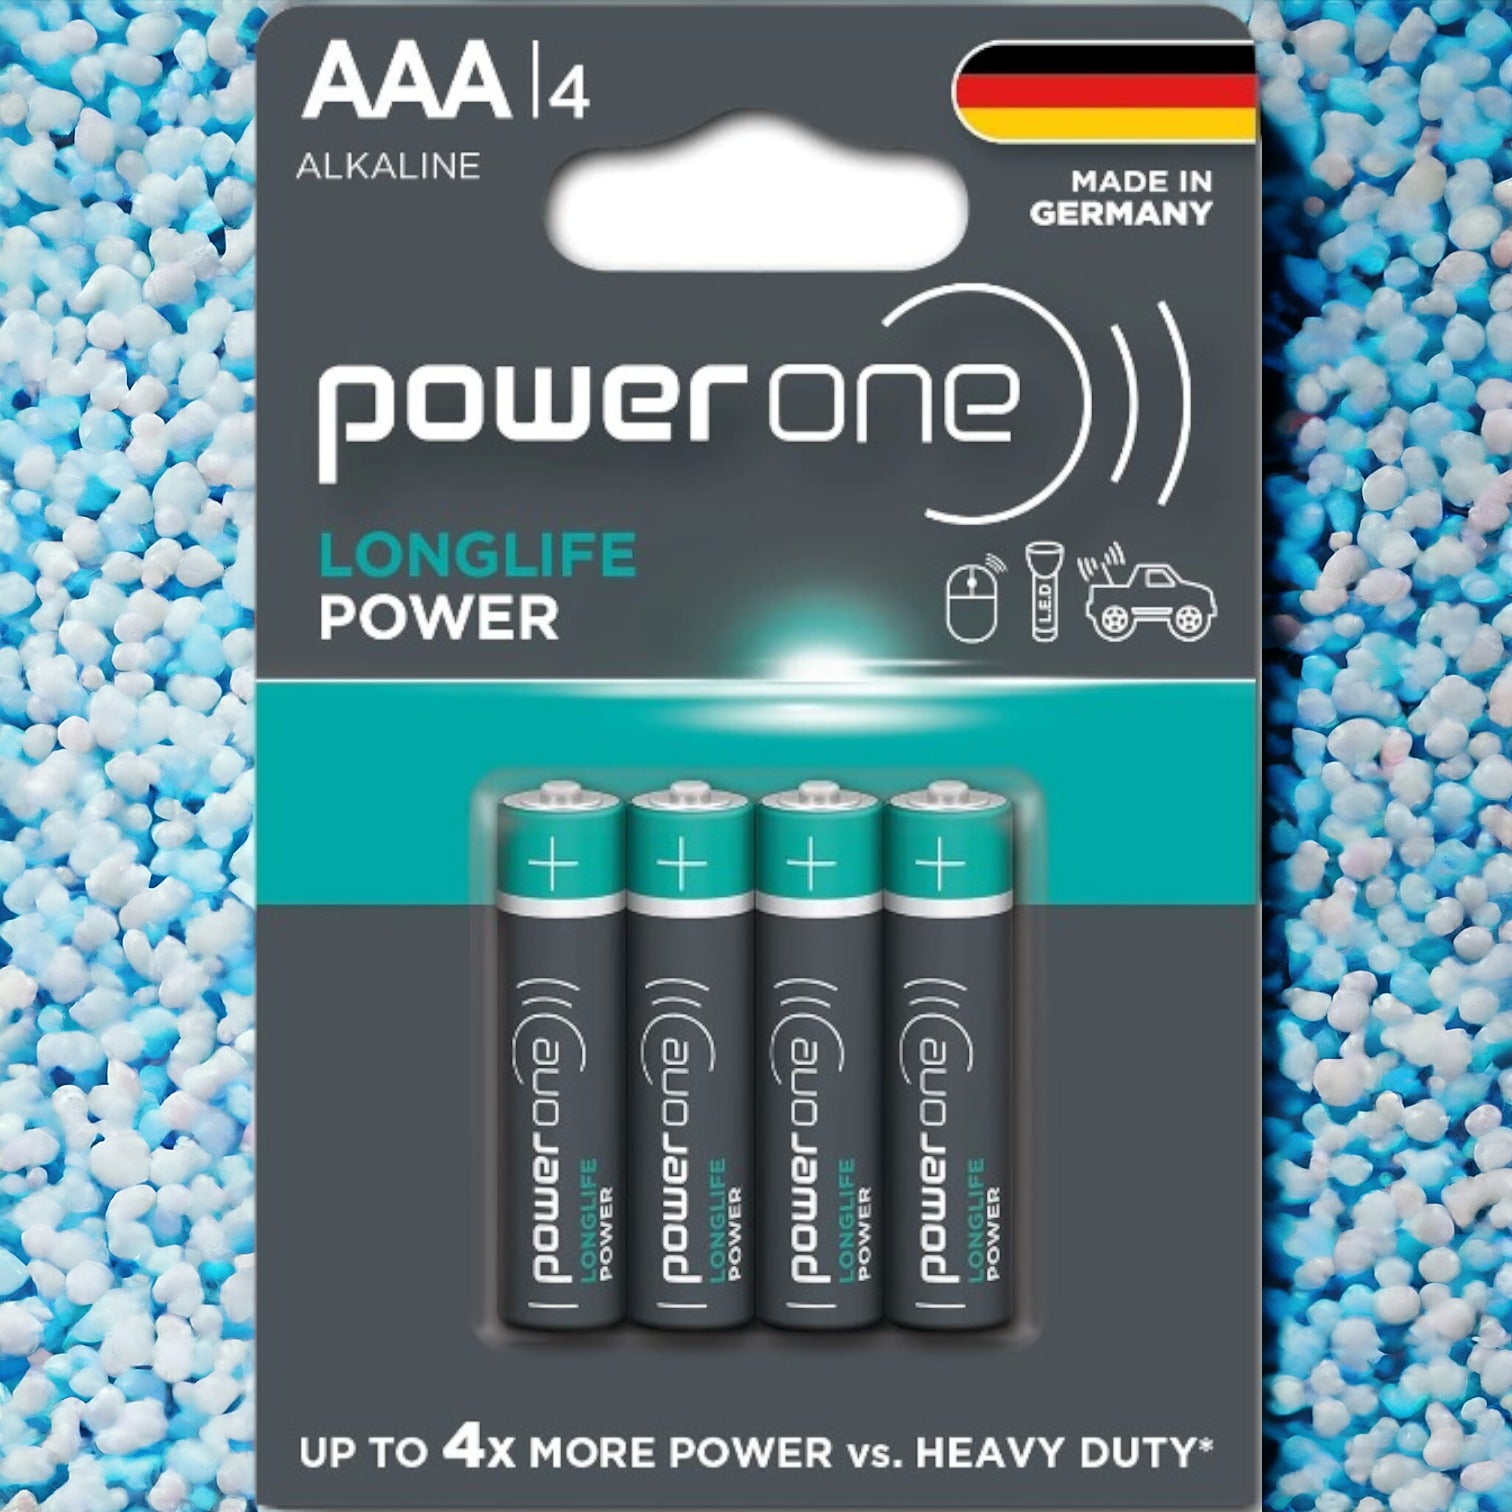 Powerone Longlife Power AAA 4s